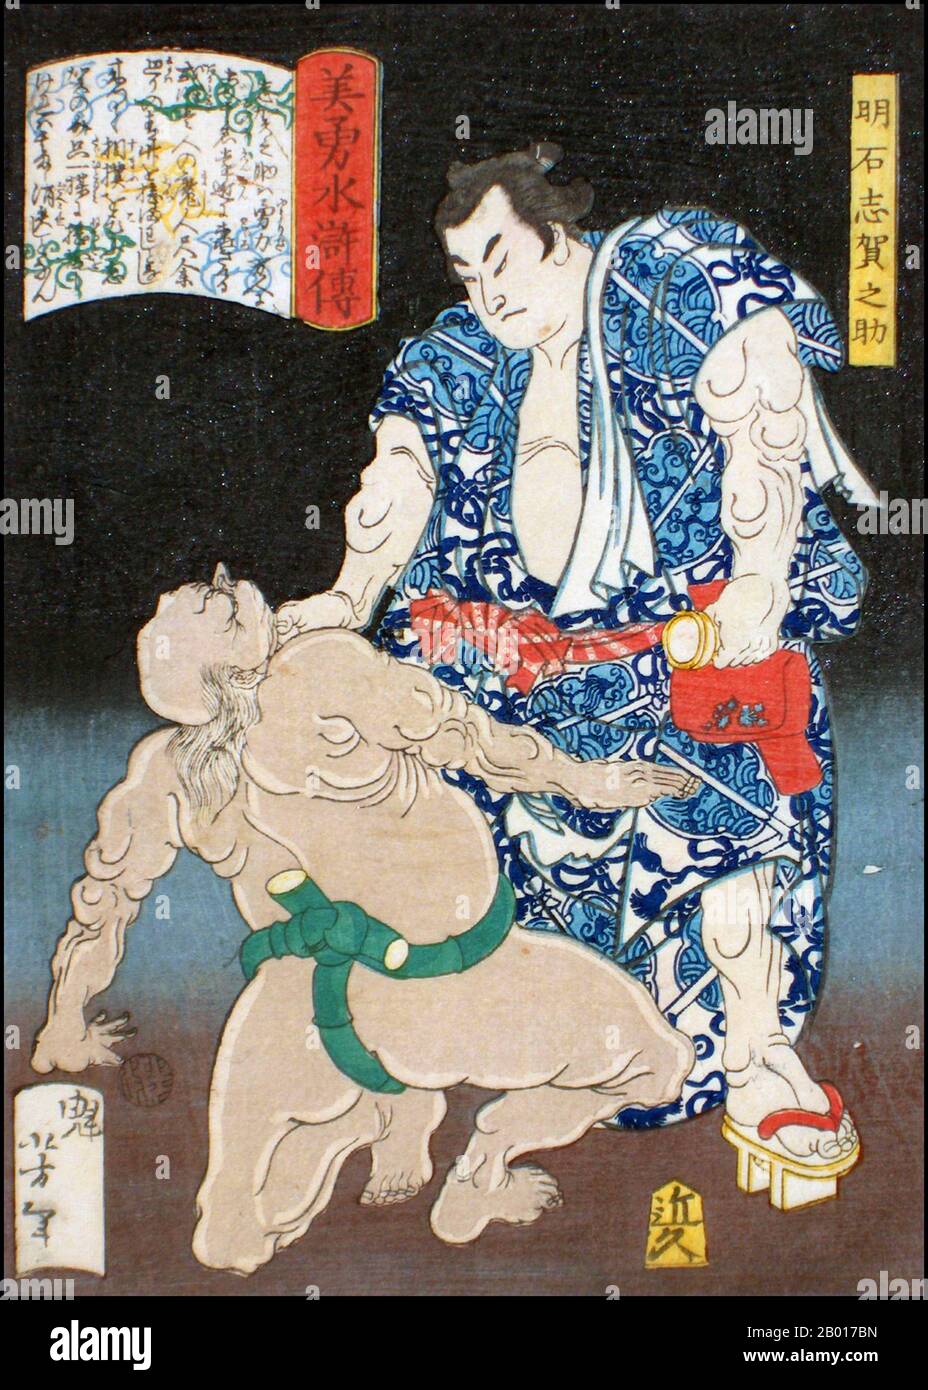 Japon: 'Akashi Shiganosuke, le légendaire Sumo Wrestler, étranglant un adversaire'.Imprimé Ukiyo-e par Tsukioka Yoshitoshi (1839 - 9 juin 1892), 1867.Tsukioka Yoshitoshi, également appelé Tiso Yoshitoshi, était un artiste japonais.Il est largement reconnu comme le dernier grand maître d'Ukiyo-e, un type d'impression de blocs de bois japonais.Il est également considéré comme l'un des plus grands innovateurs de la forme.Sa carrière s'est étendue à deux époques : les dernières années du Japon féodal et les premières années du Japon moderne après la restauration de Meiji.] Banque D'Images